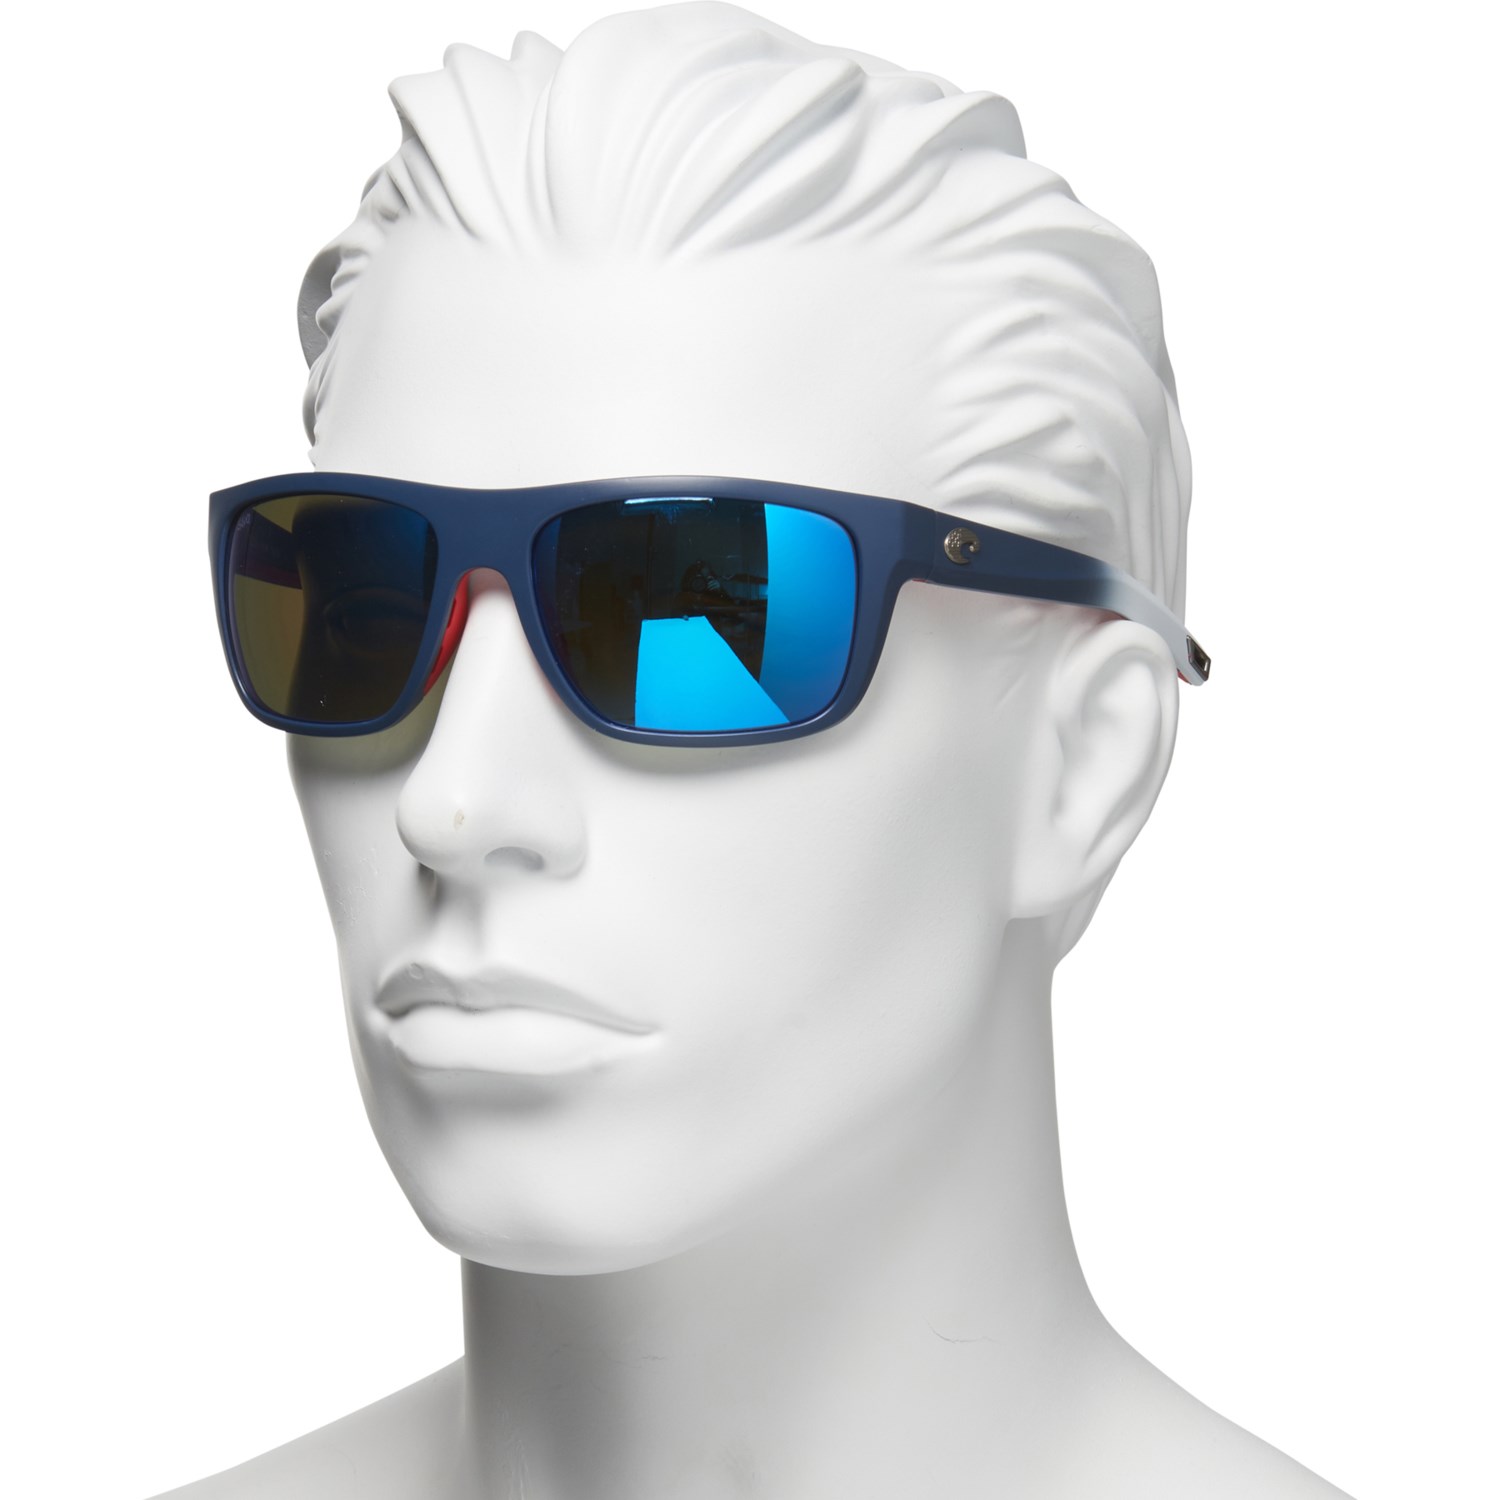 Costa Broadbill Sunglasses (For Men) - Save 25%